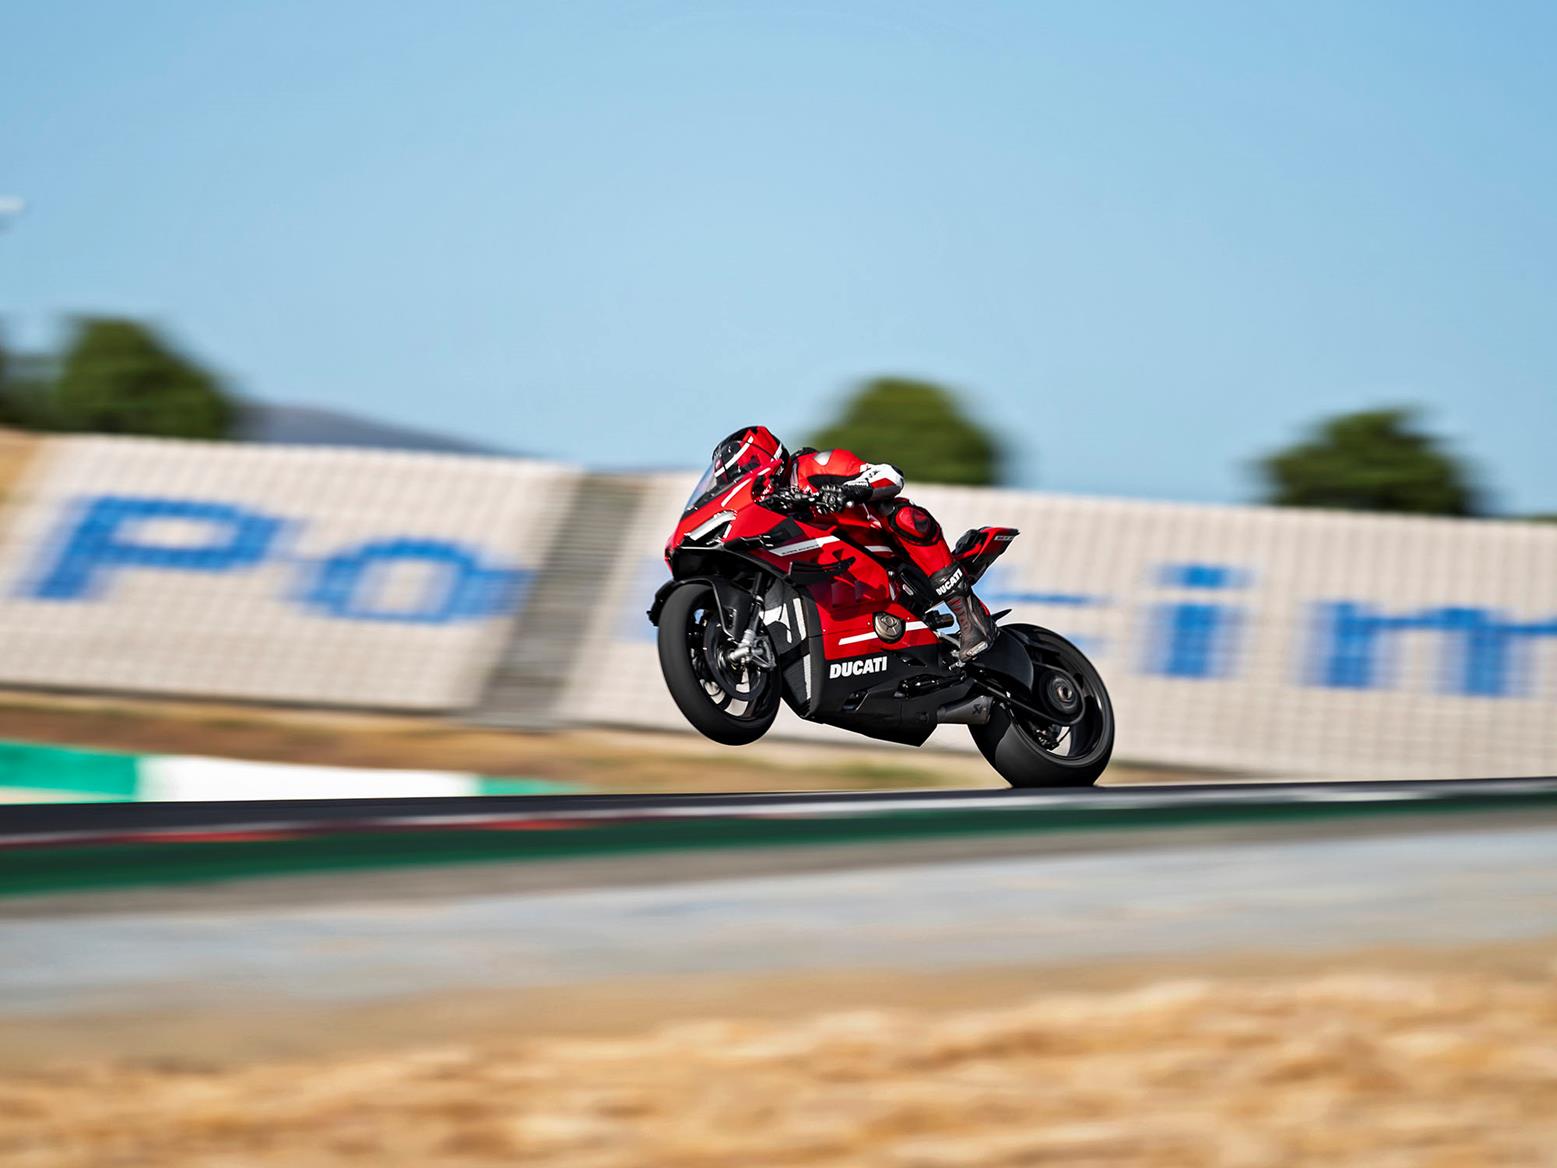 Ducati ra mắt moto Superleggera V4 mạnh mẽ nhất và cũng là nhẹ nhất của mình, giới hạn chỉ 500 chiếc